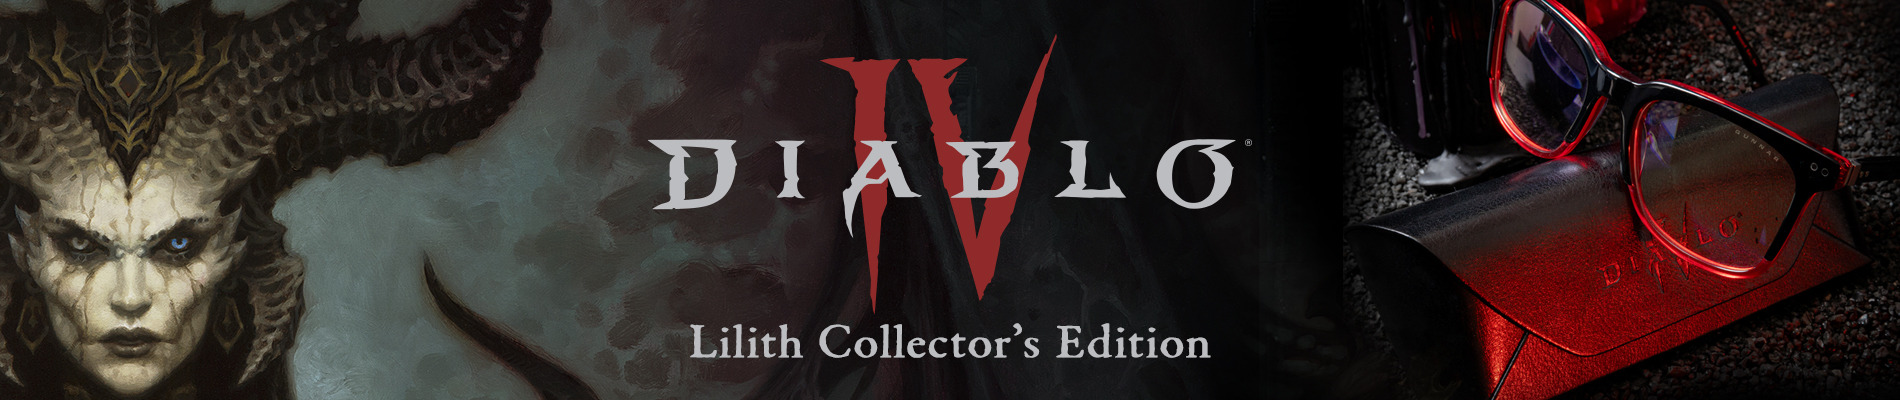 Diablo IV Lilith Collector's Edition